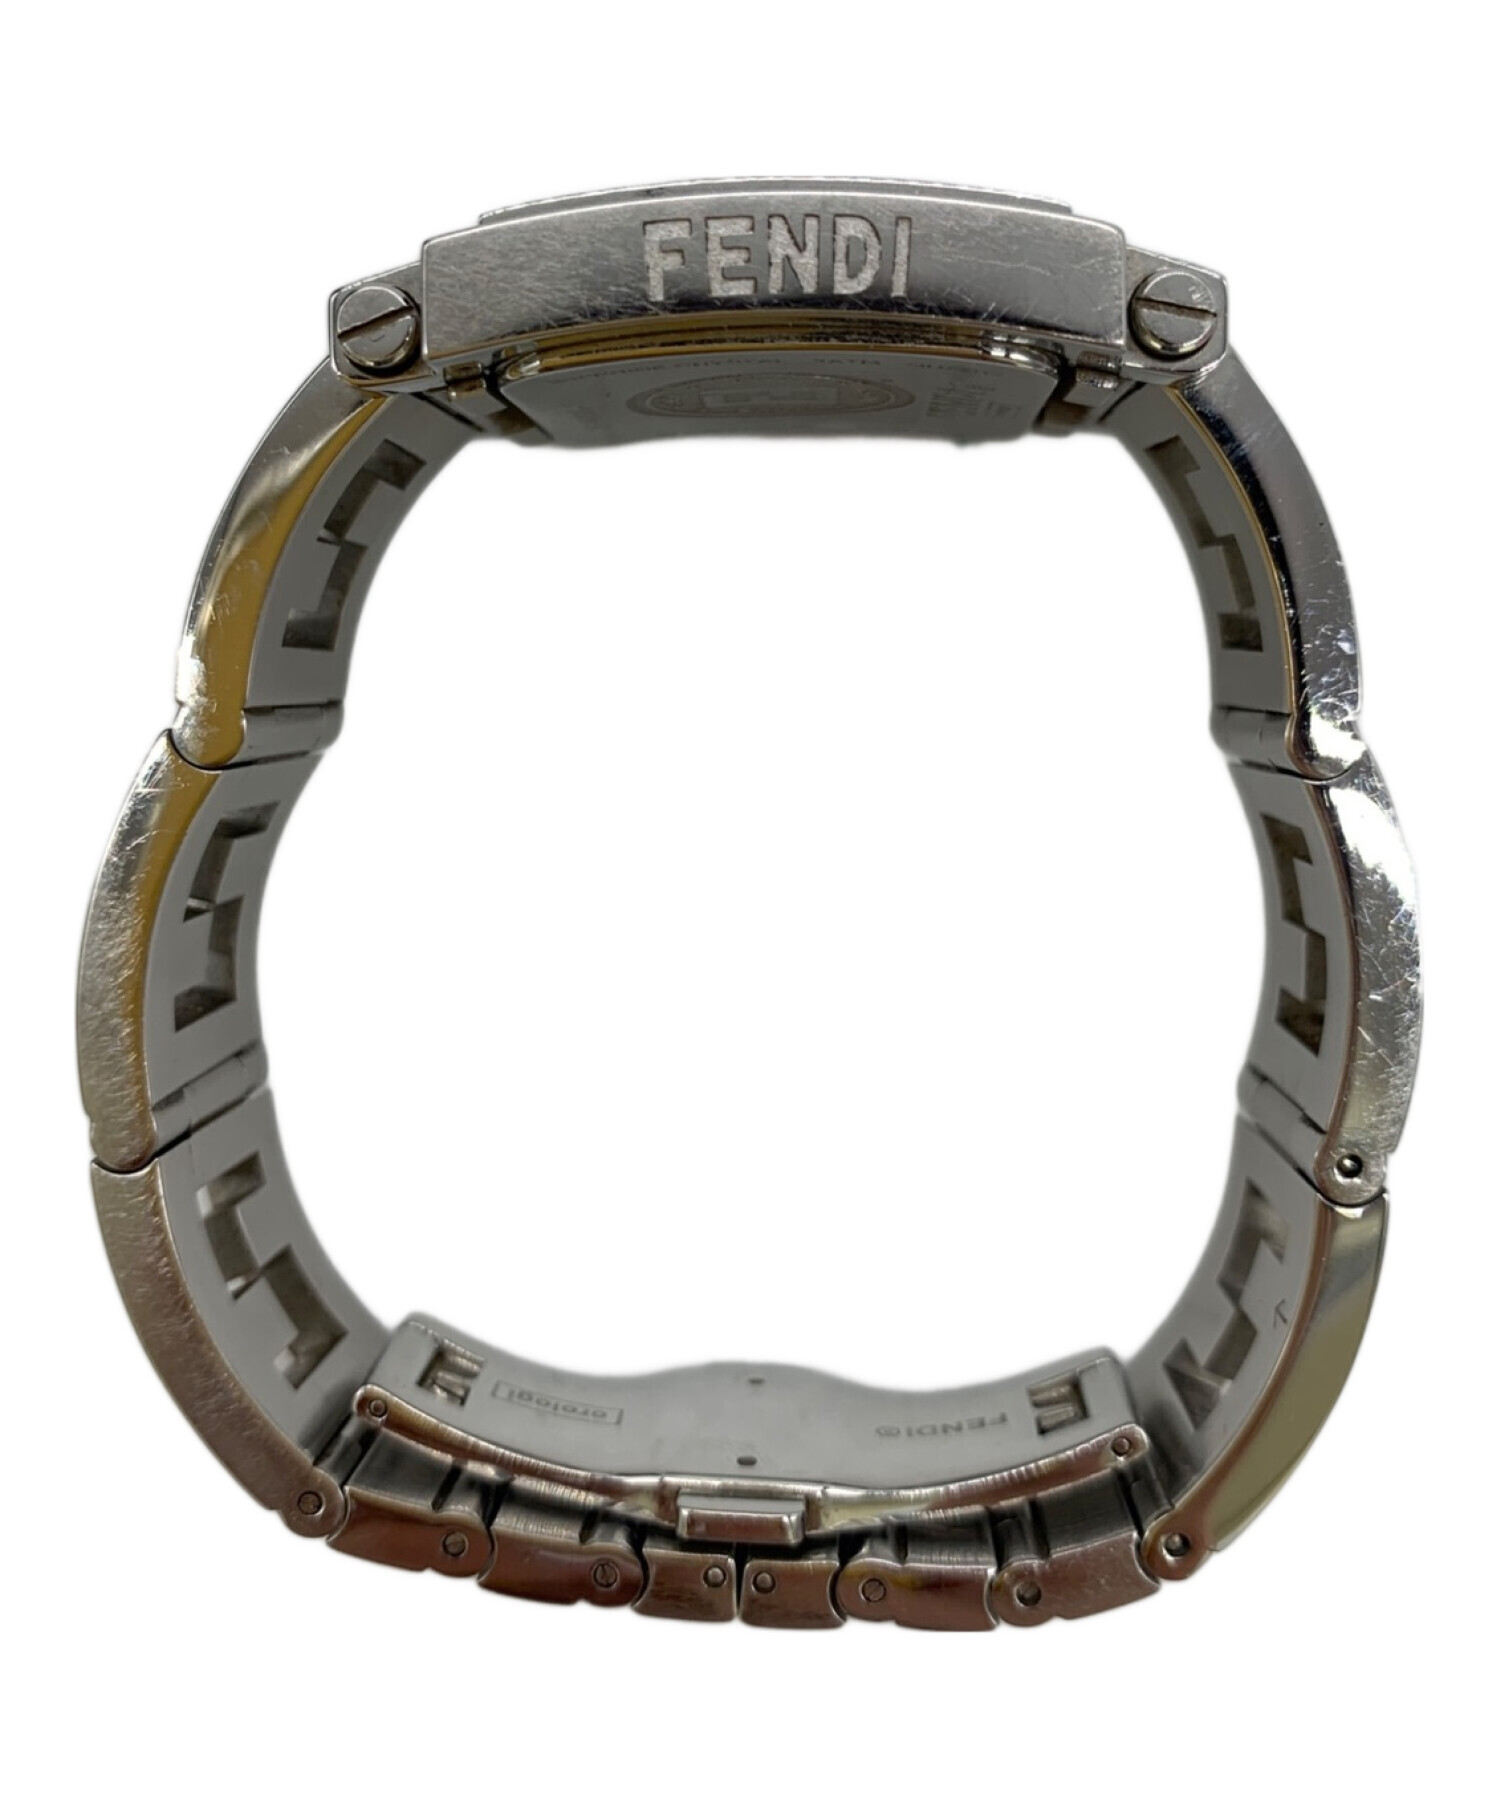 FENDI (フェンディ) 腕時計